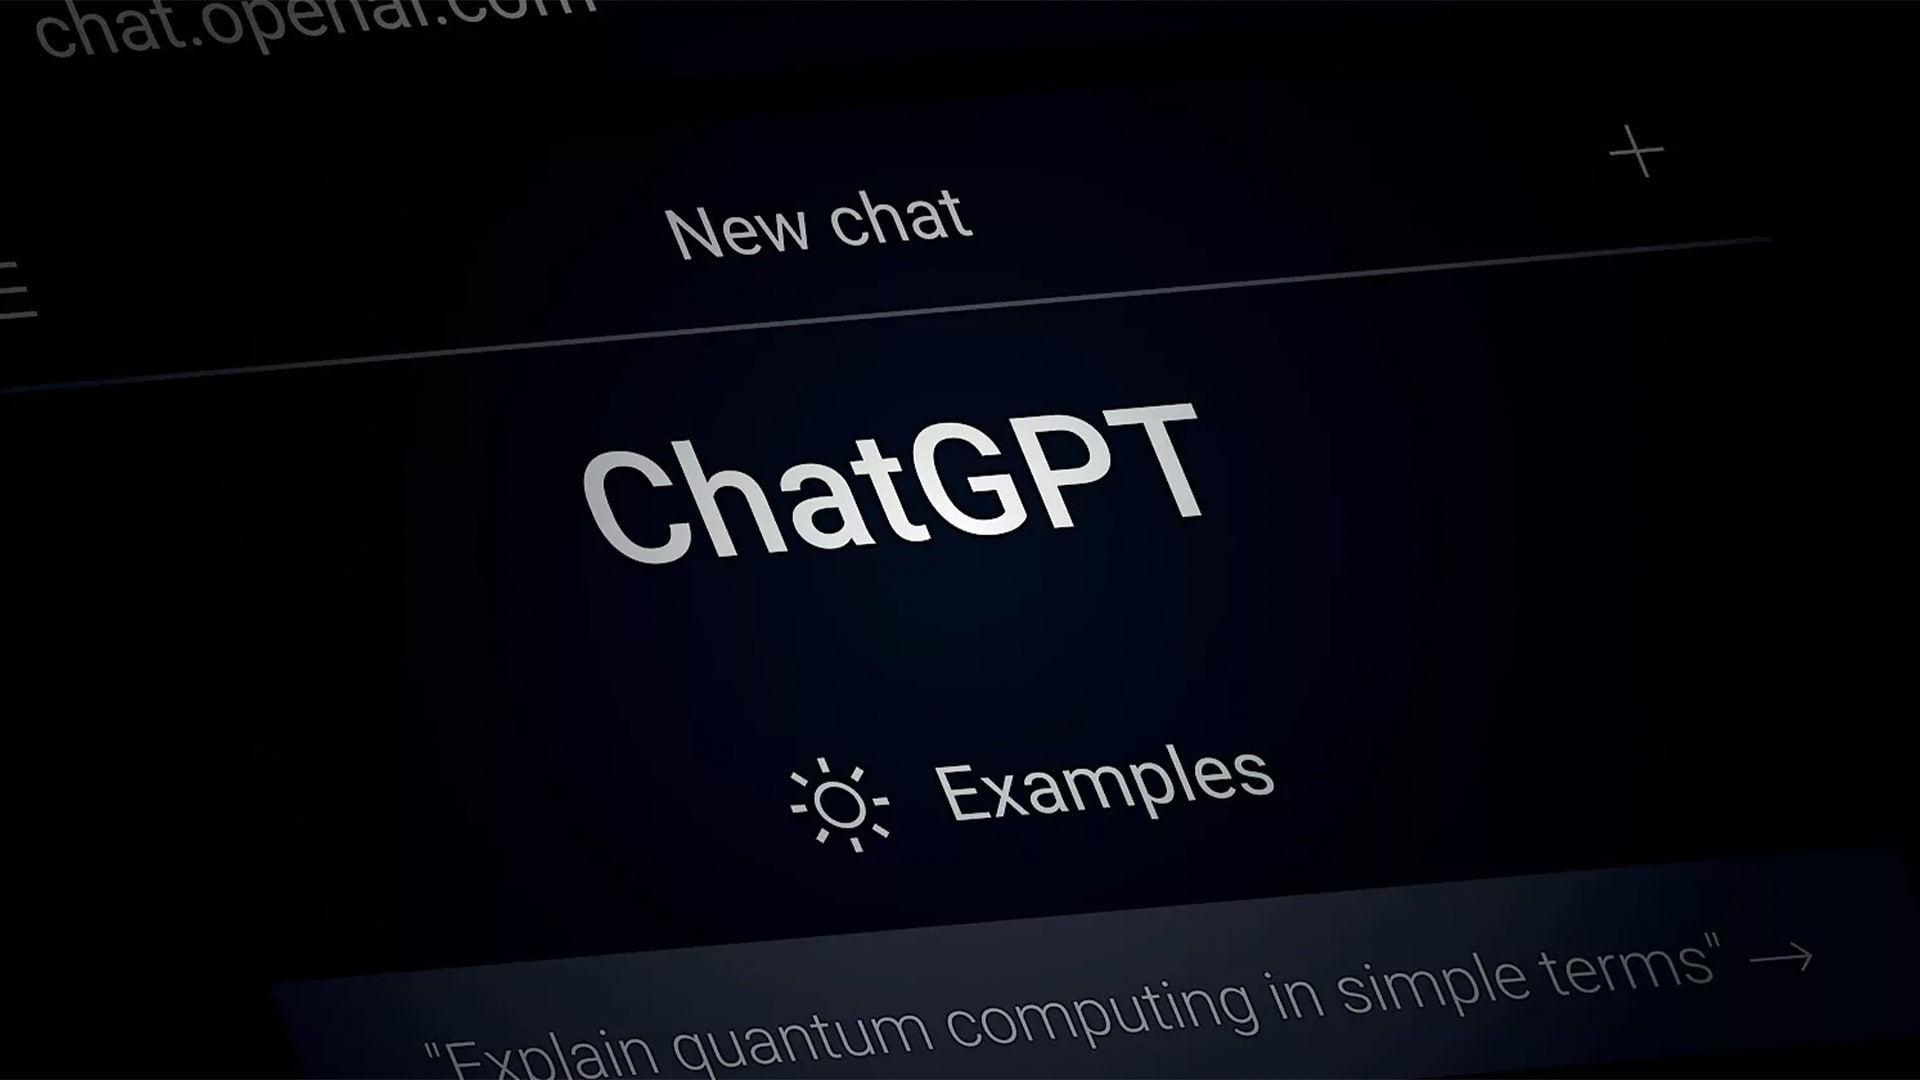 هوش مصنوعی صحبت می کند: گرگ براکمن از OpenAI از ویژگی جدید ChatGPT Voice در میان درام سم آلتمن رونمایی می کند.